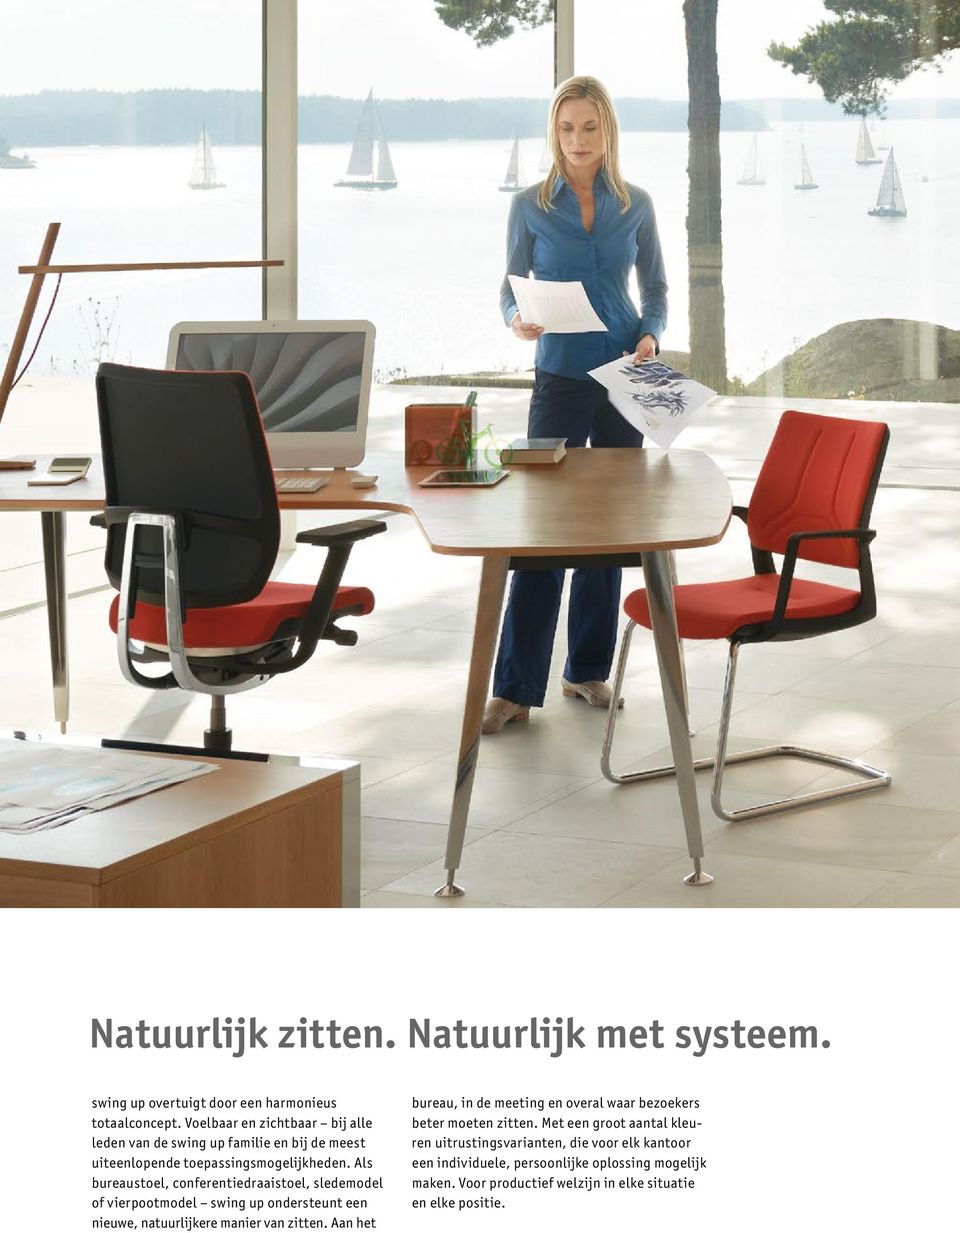 Als bureaustoel, conferentiedraaistoel, sledemodel of vierpootmodel swing up ondersteunt een nieuwe, natuurlijkere manier van zitten.